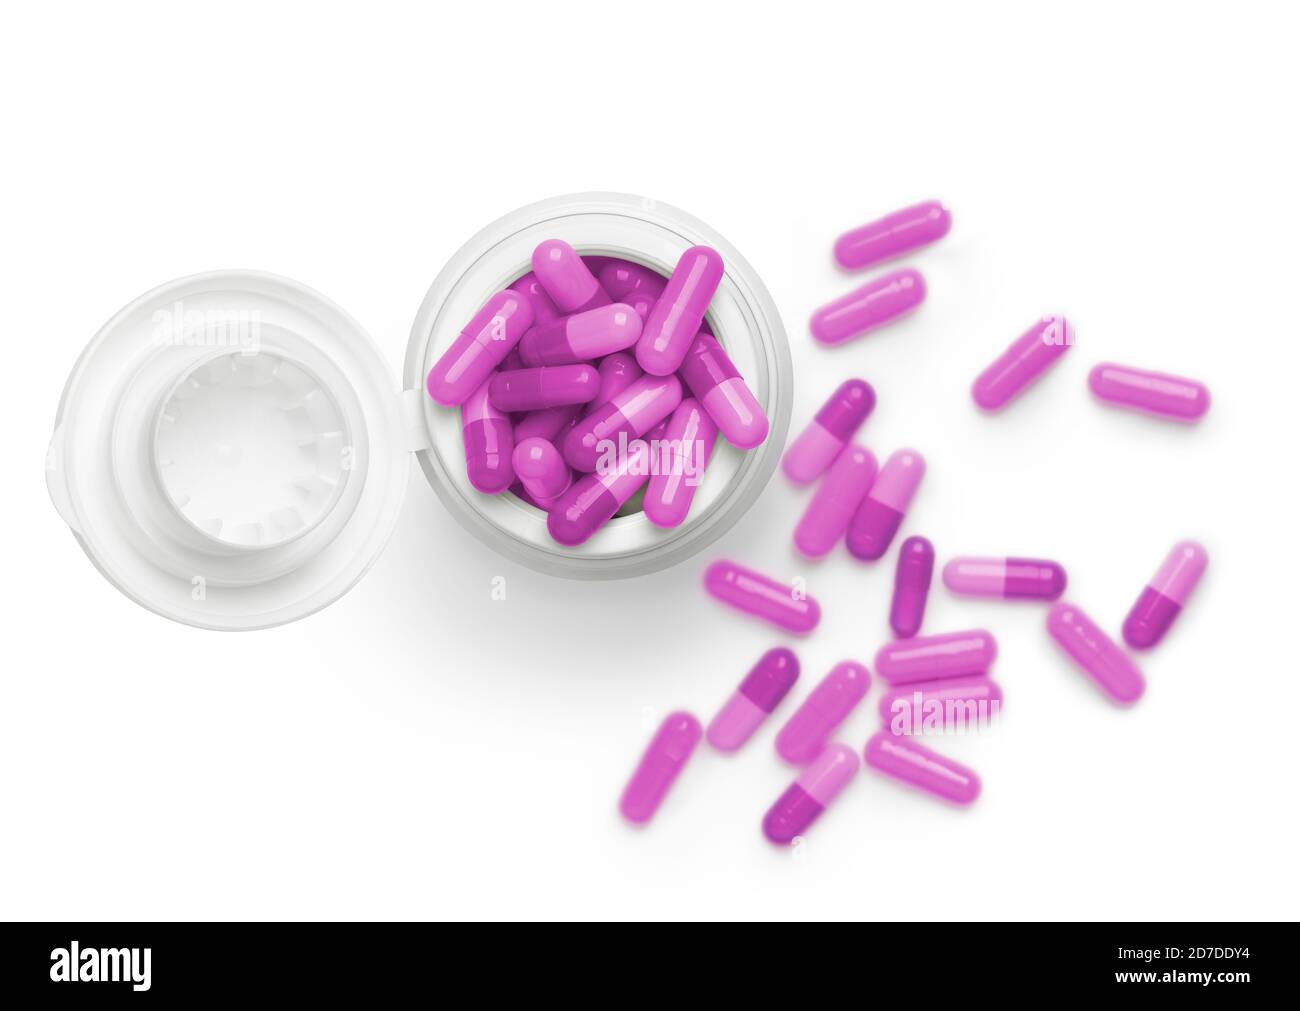 Vista superior de tubo de color rosa montón de pastillas contra fondo blanco. Enfoque en la parte superior del bote y enfoque suave en el fondo para dar profundidad a la imagen. Foto de stock